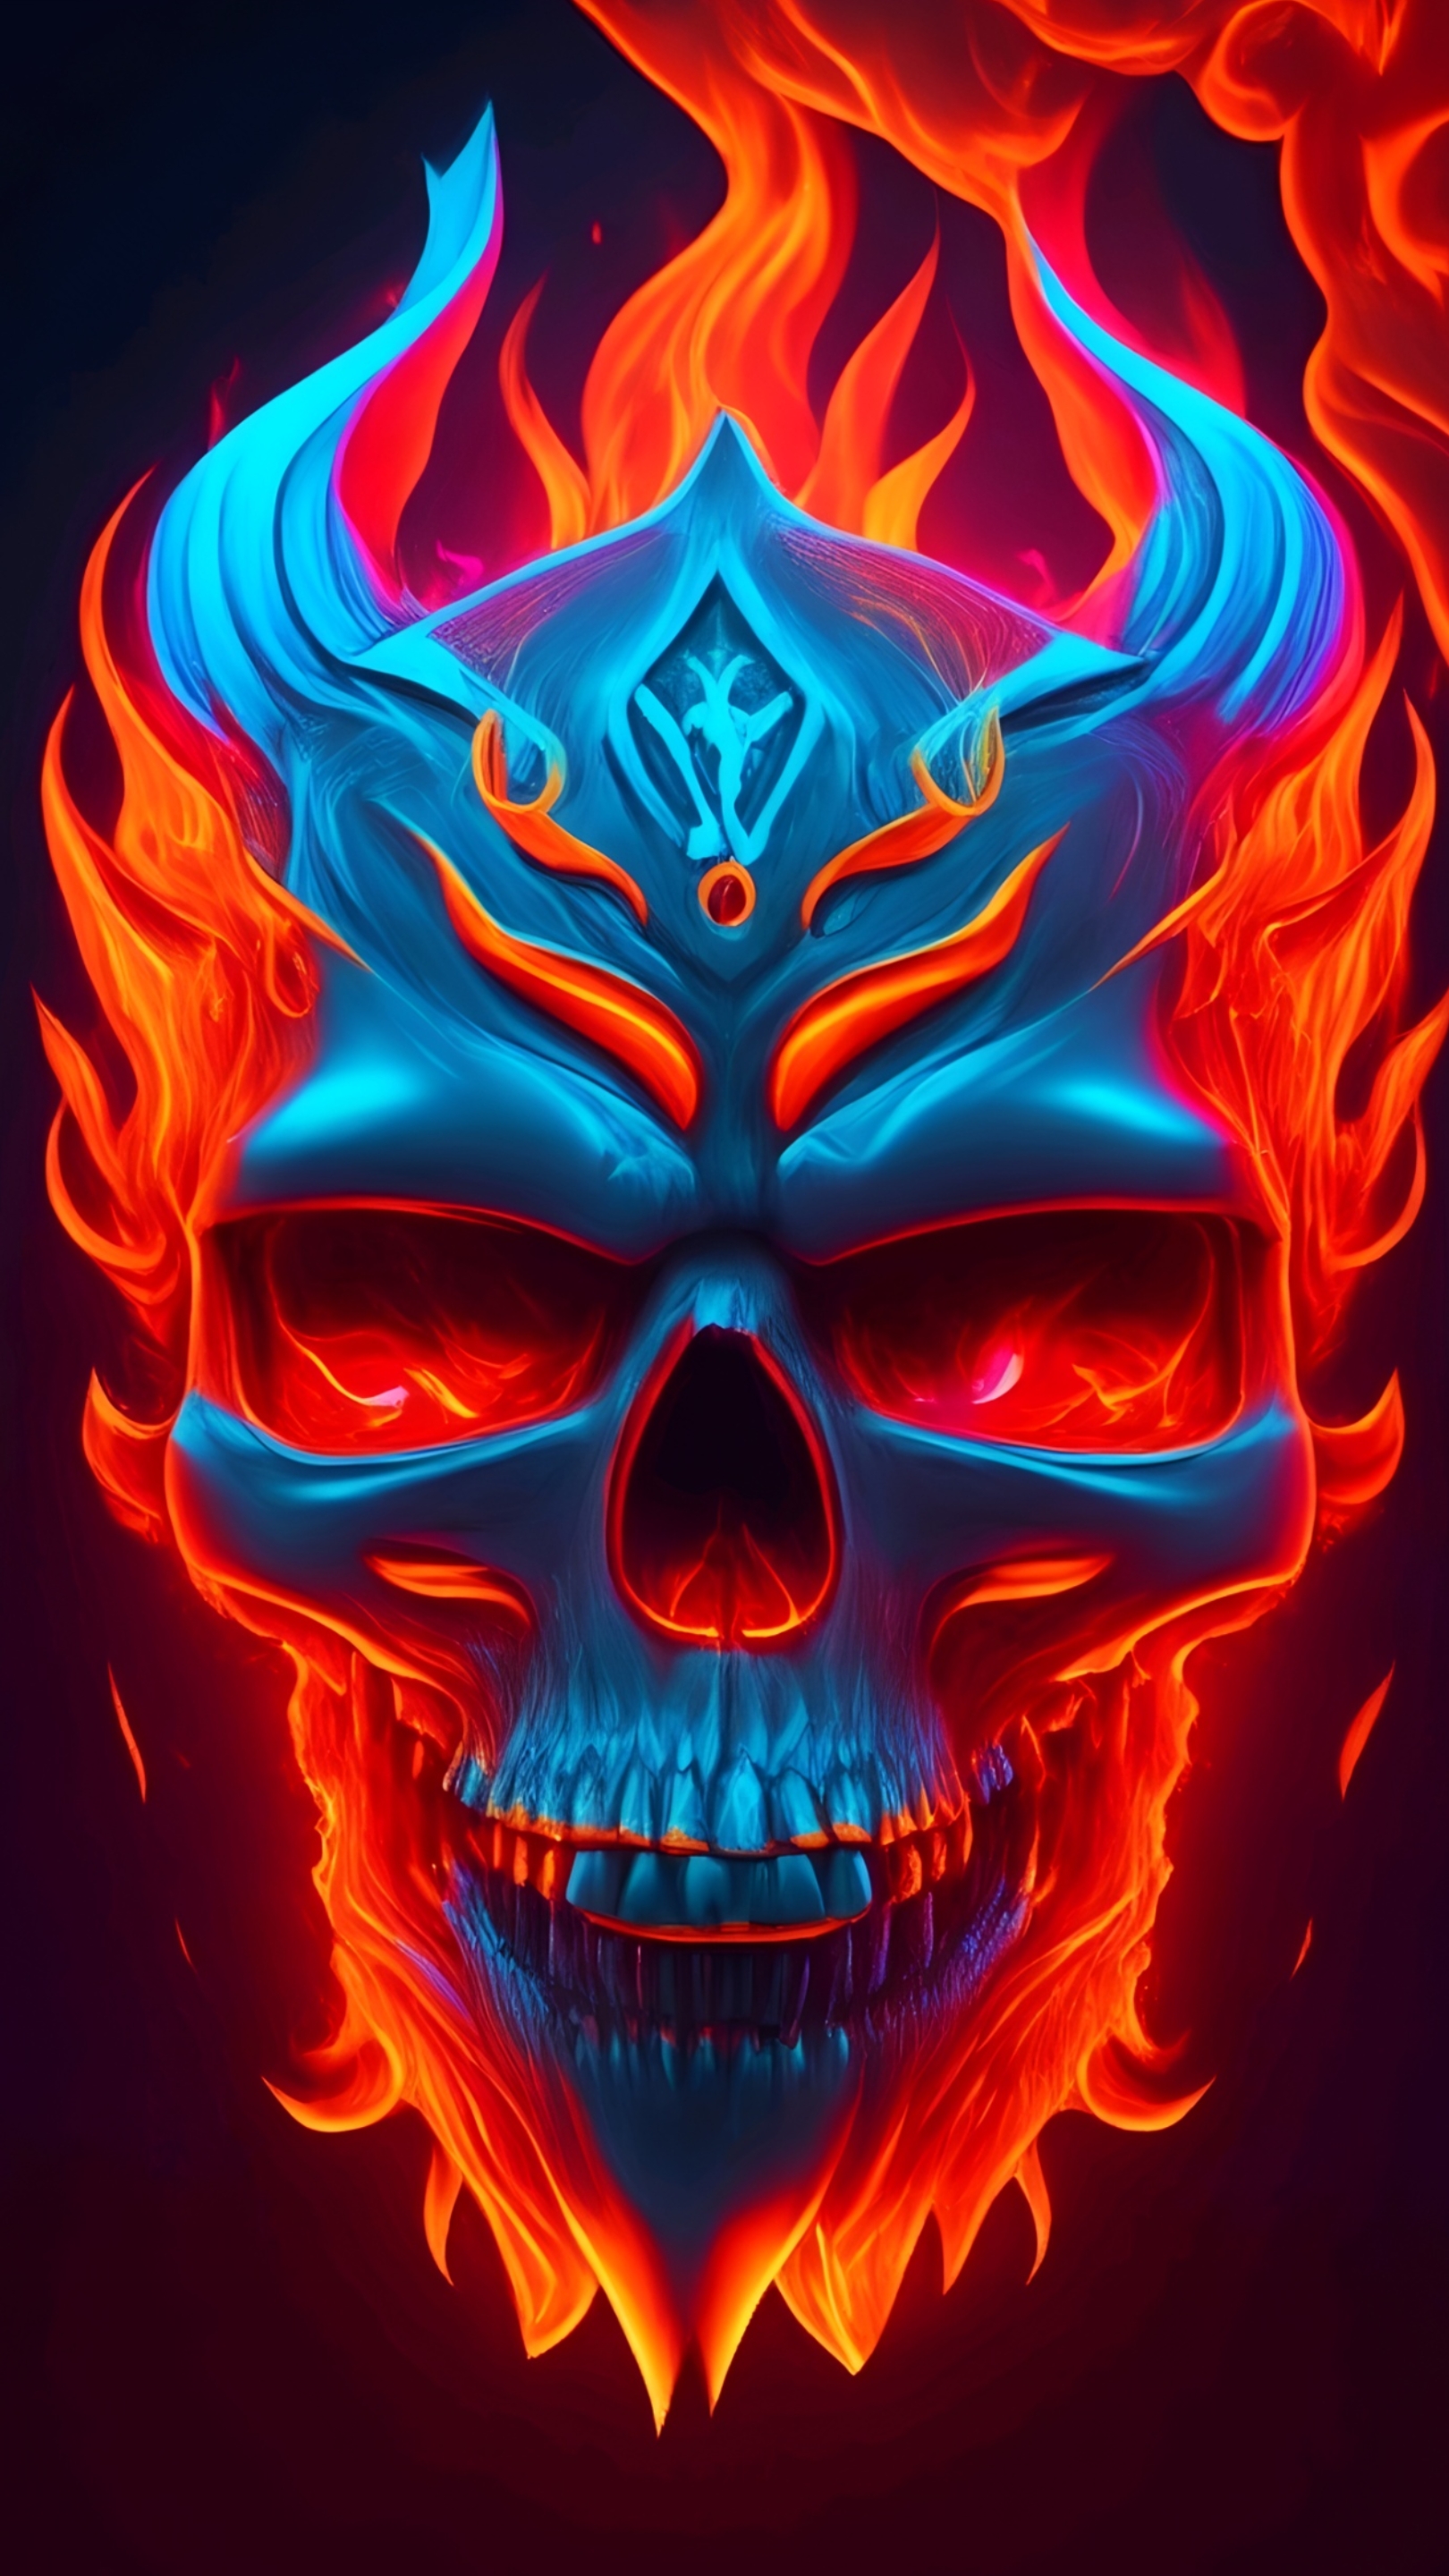 Skull fire by JORSART